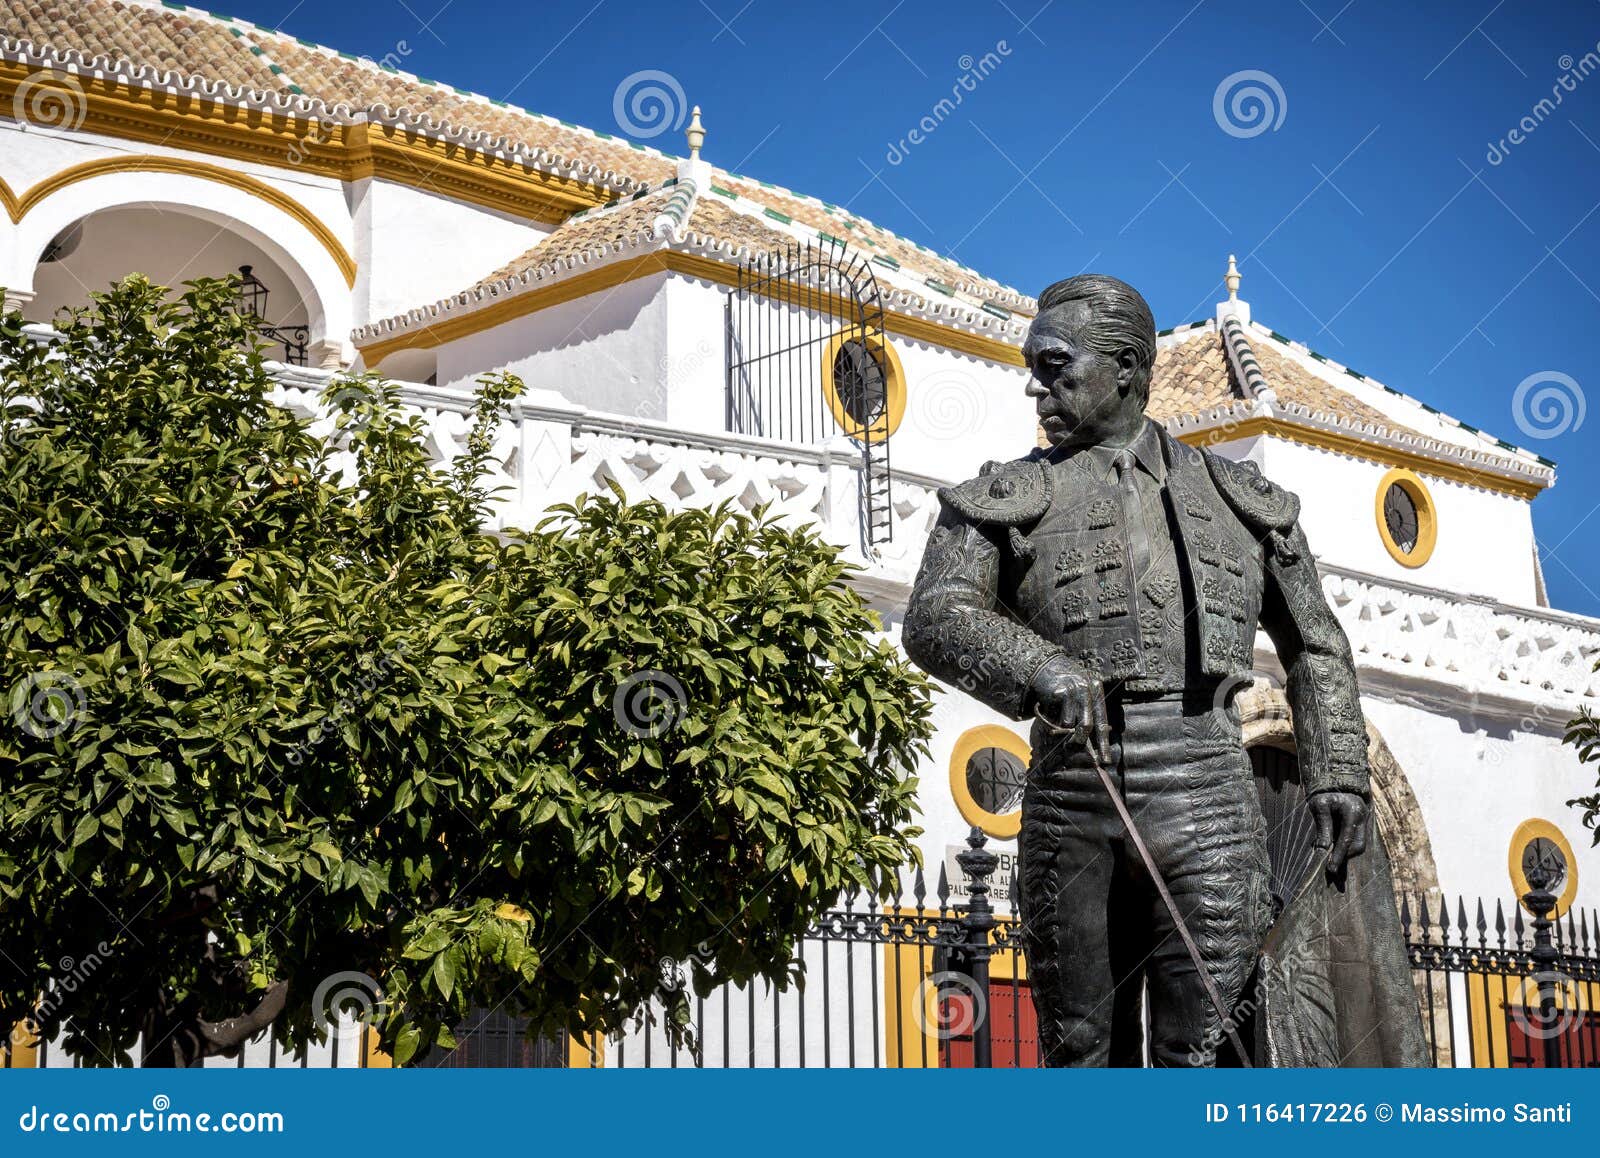 seville, andalusia, spain: the statue of curro romero, a famous torero from seville, in front of plaza de toros de la maestranza